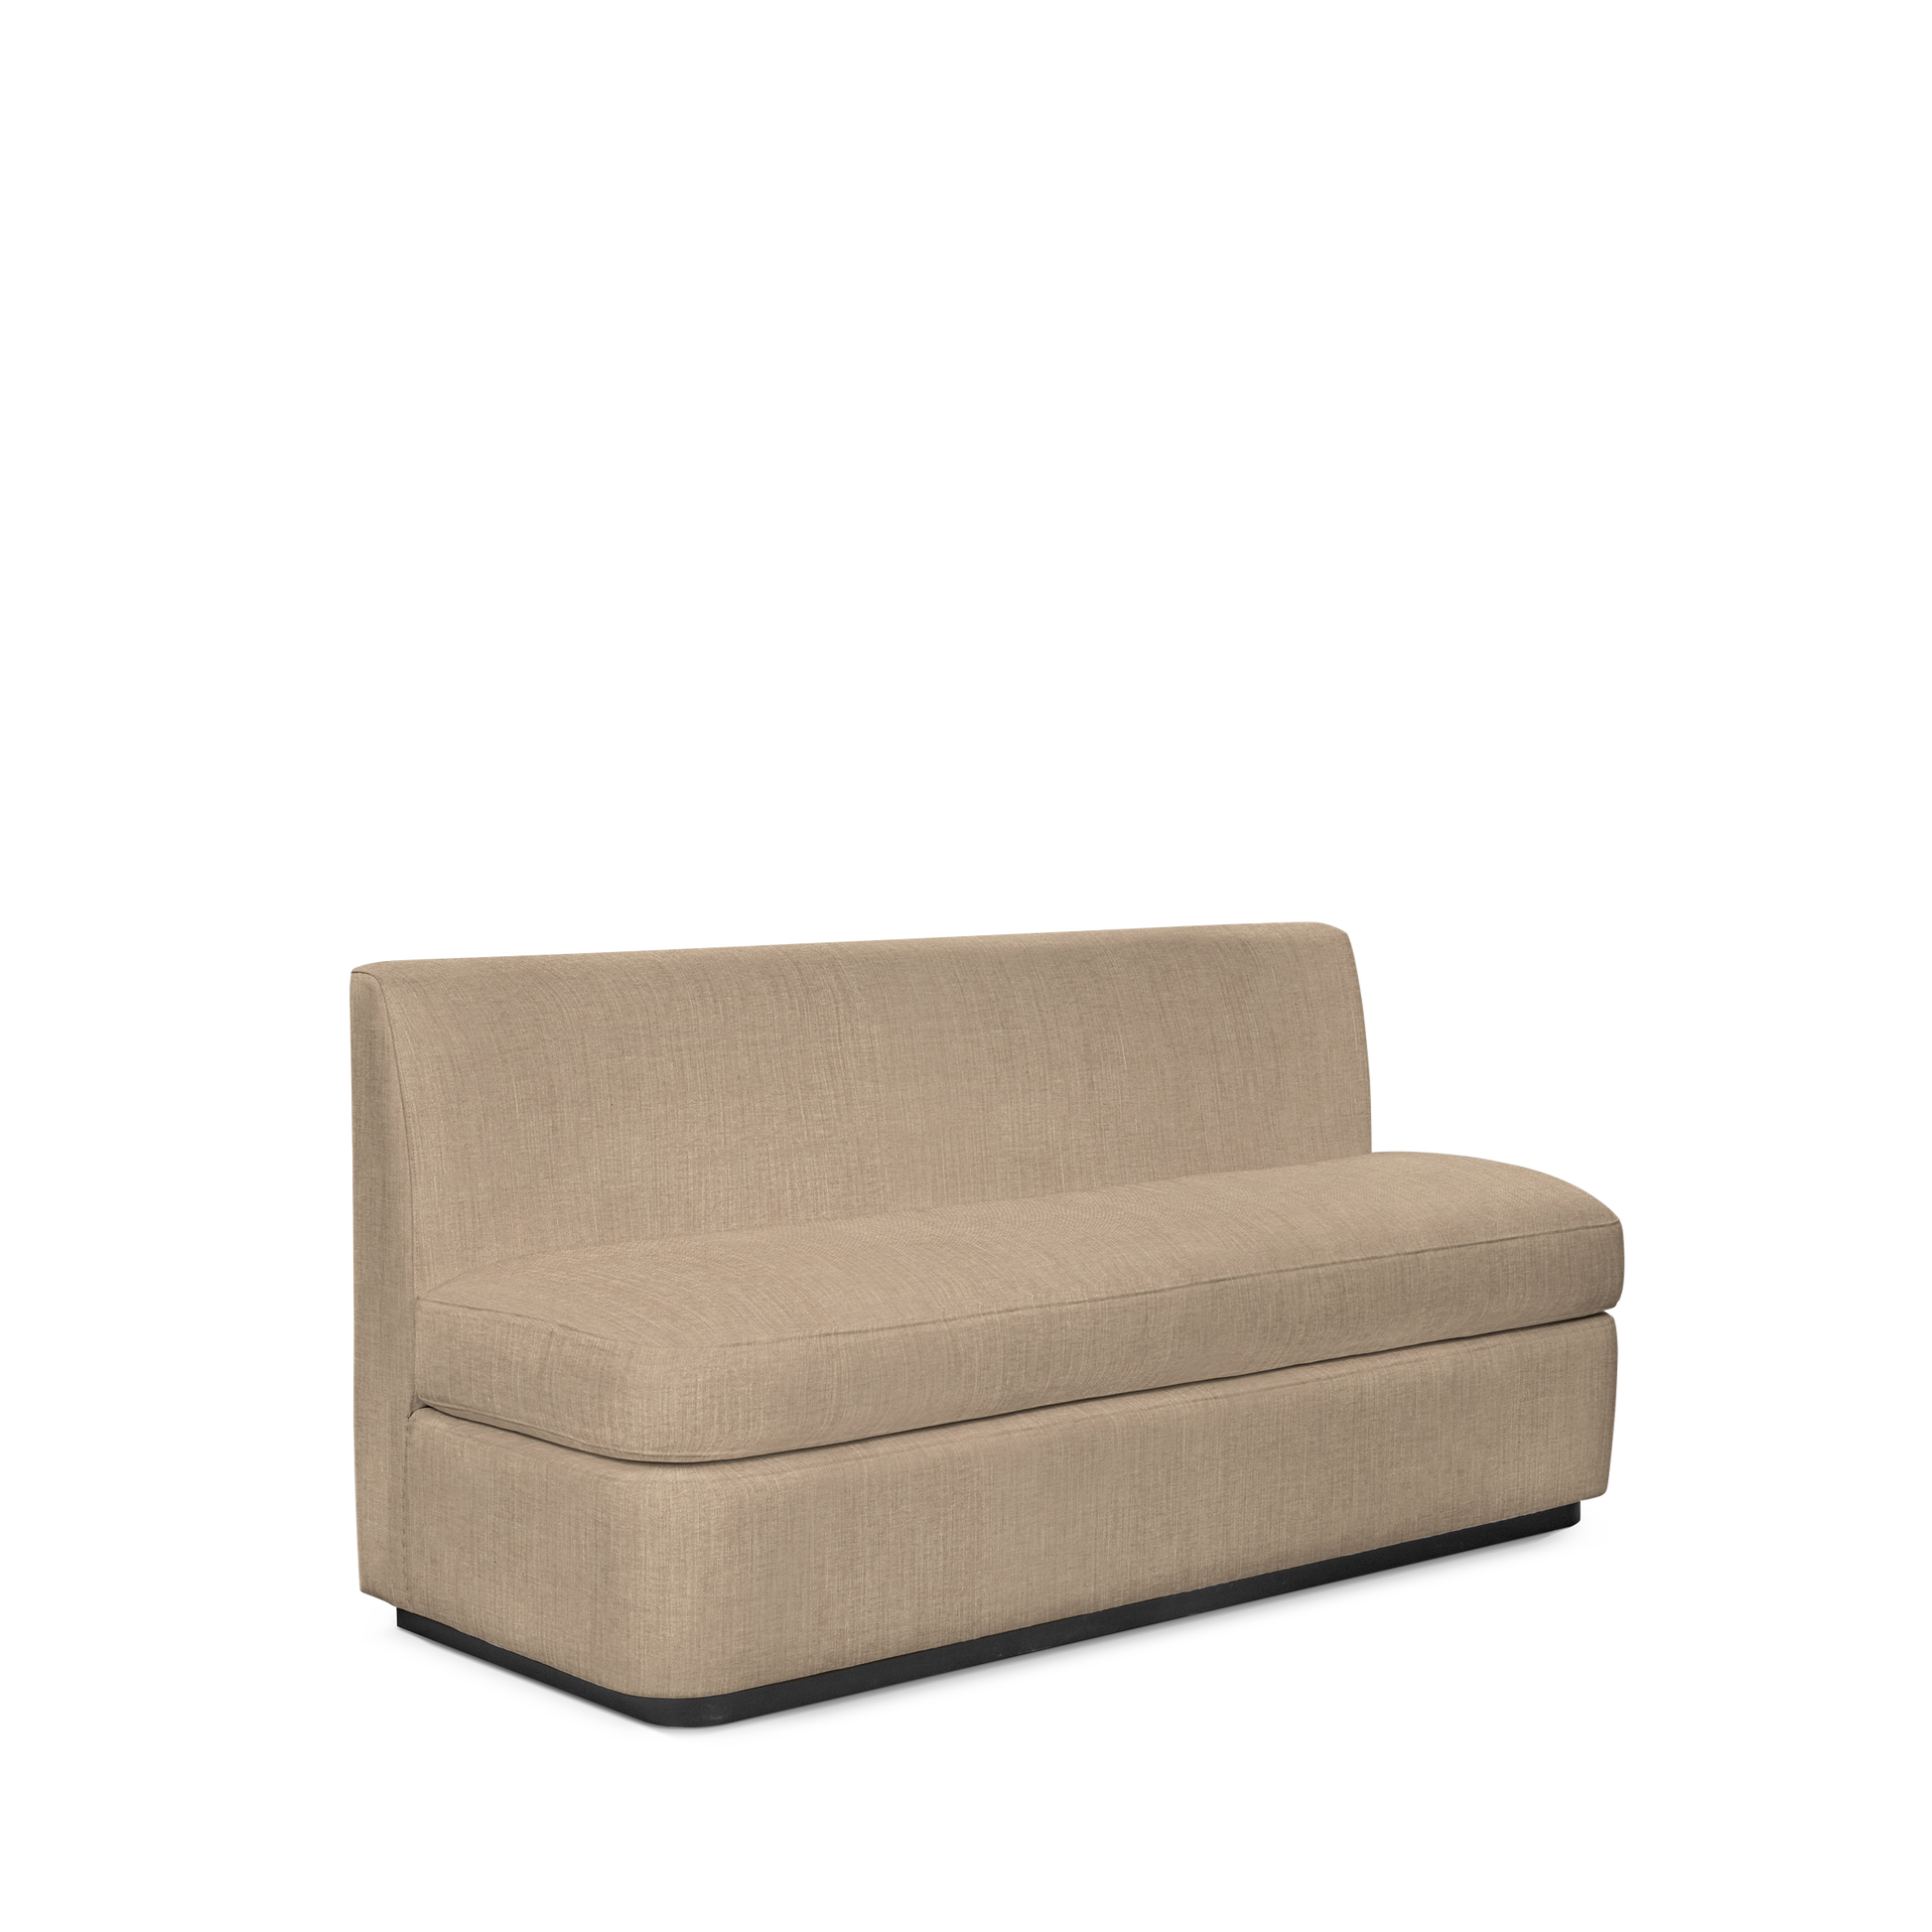  CALMA KITCHEN 3-seater sofa with khaki textile